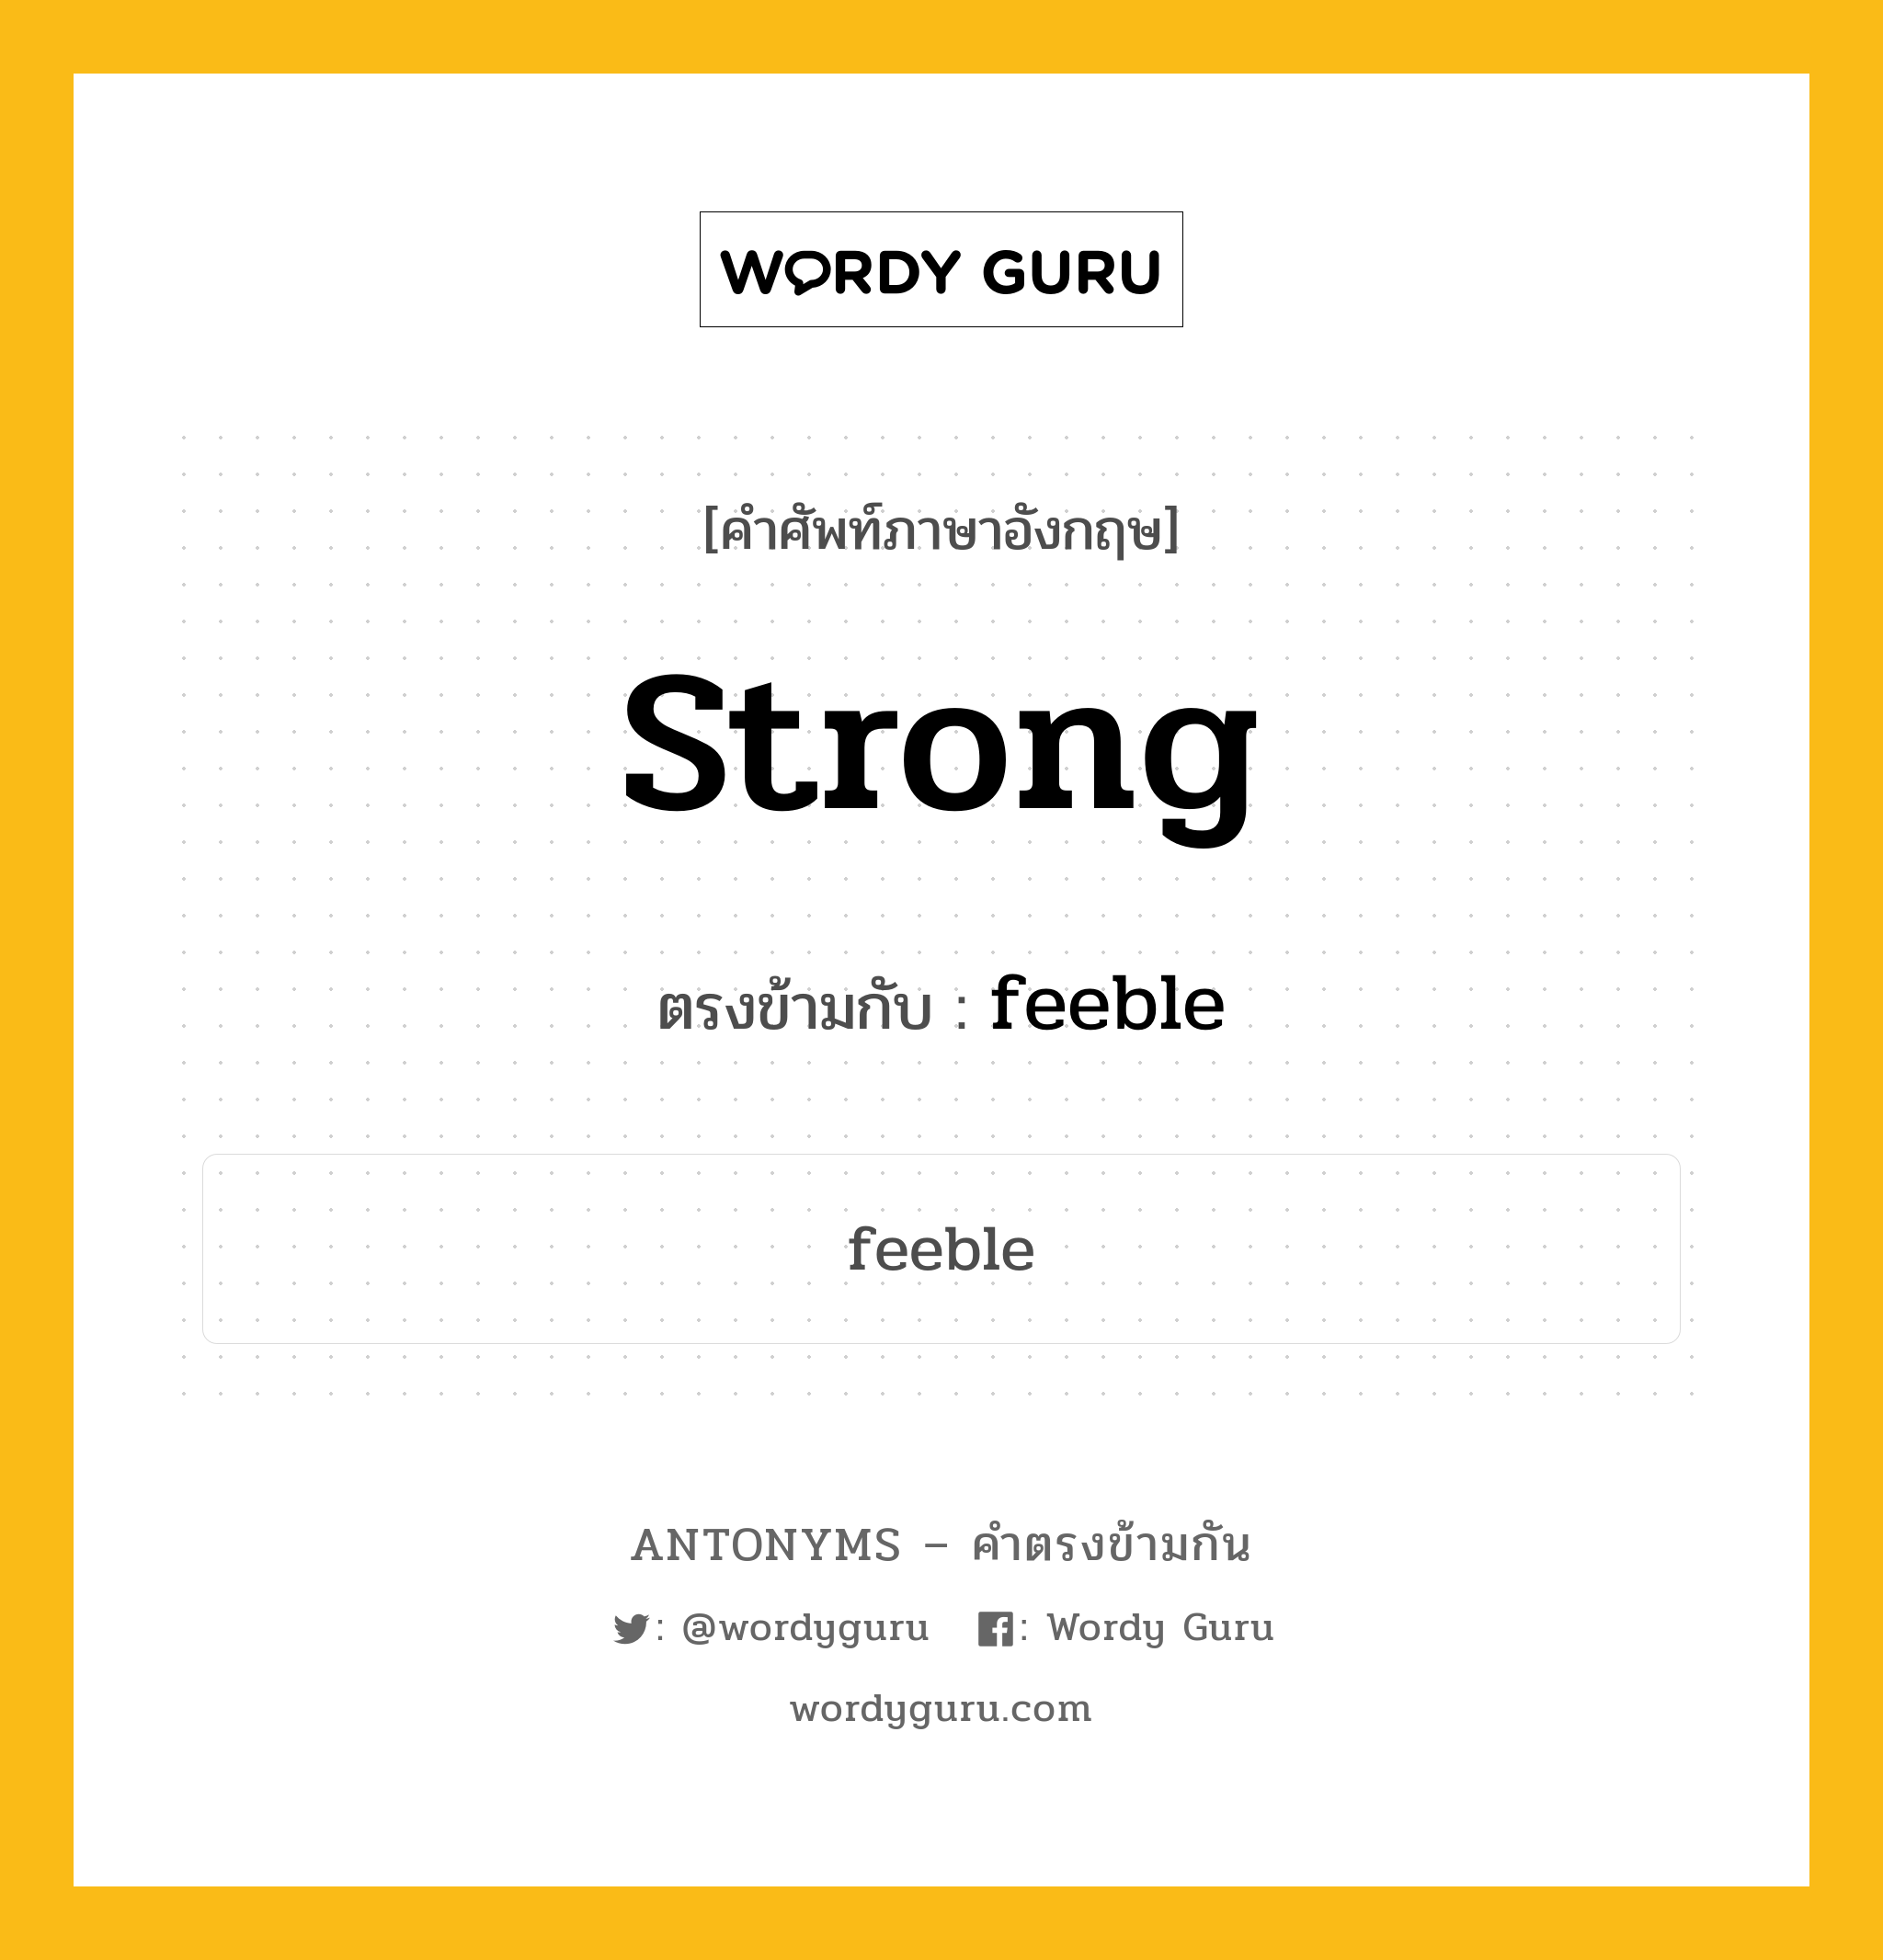 strong เป็นคำตรงข้ามกับคำไหนบ้าง?, คำศัพท์ภาษาอังกฤษ strong ตรงข้ามกับ feeble หมวด feeble